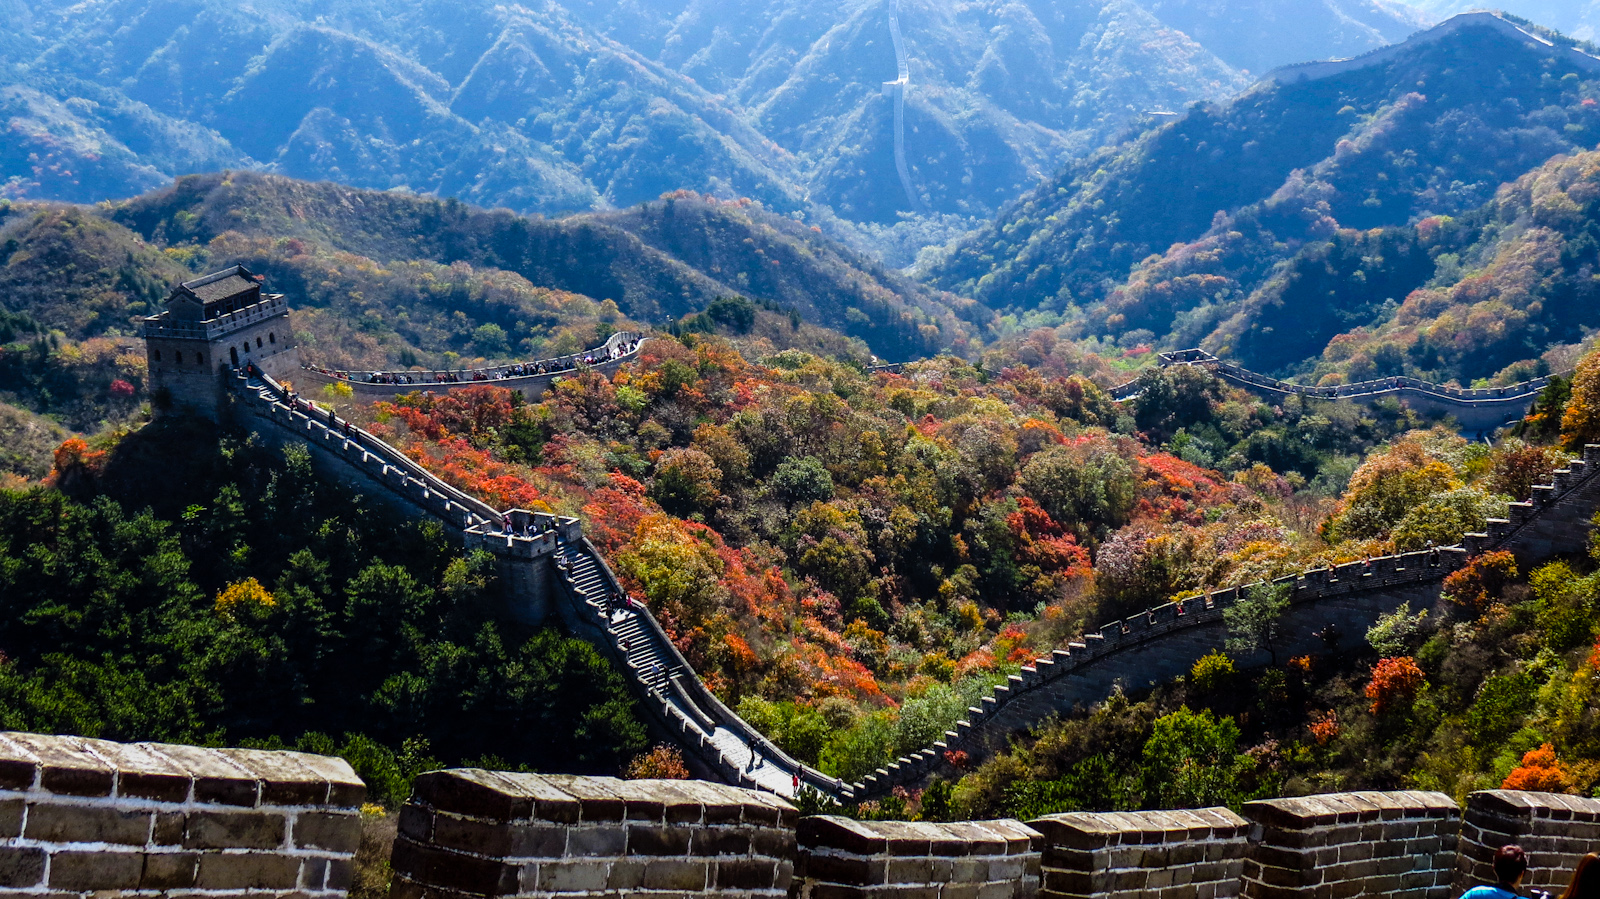 great-wall-of-china-badaling-turrets